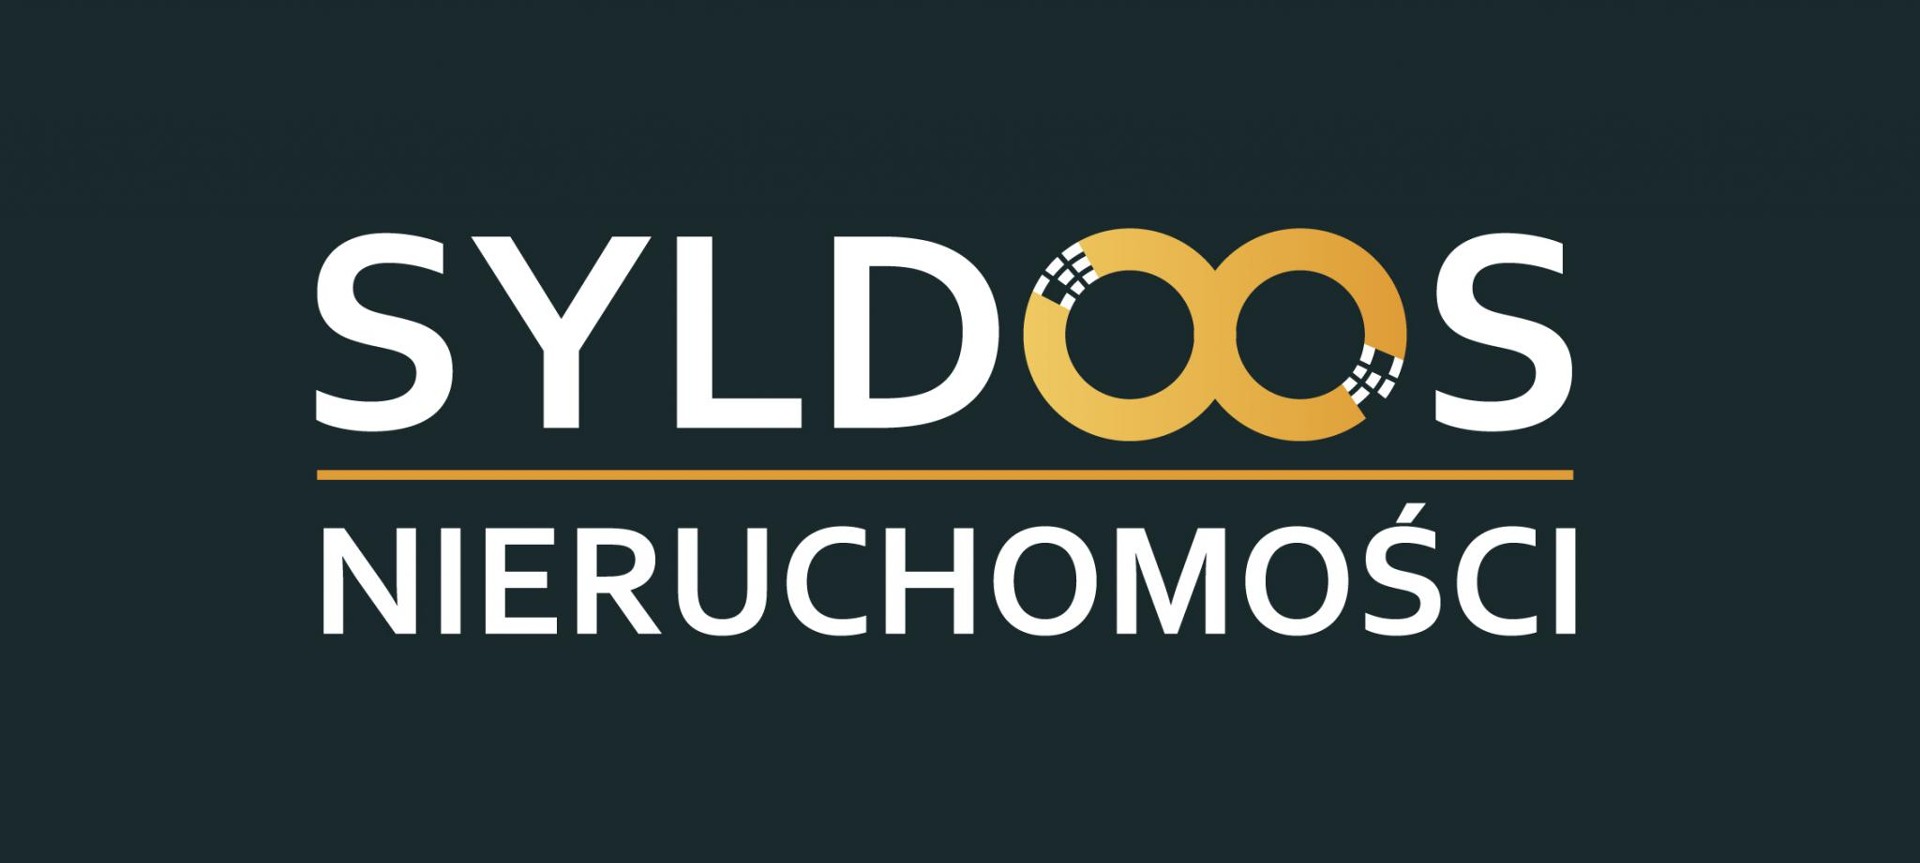 Logo Syldoos Nieruchomości